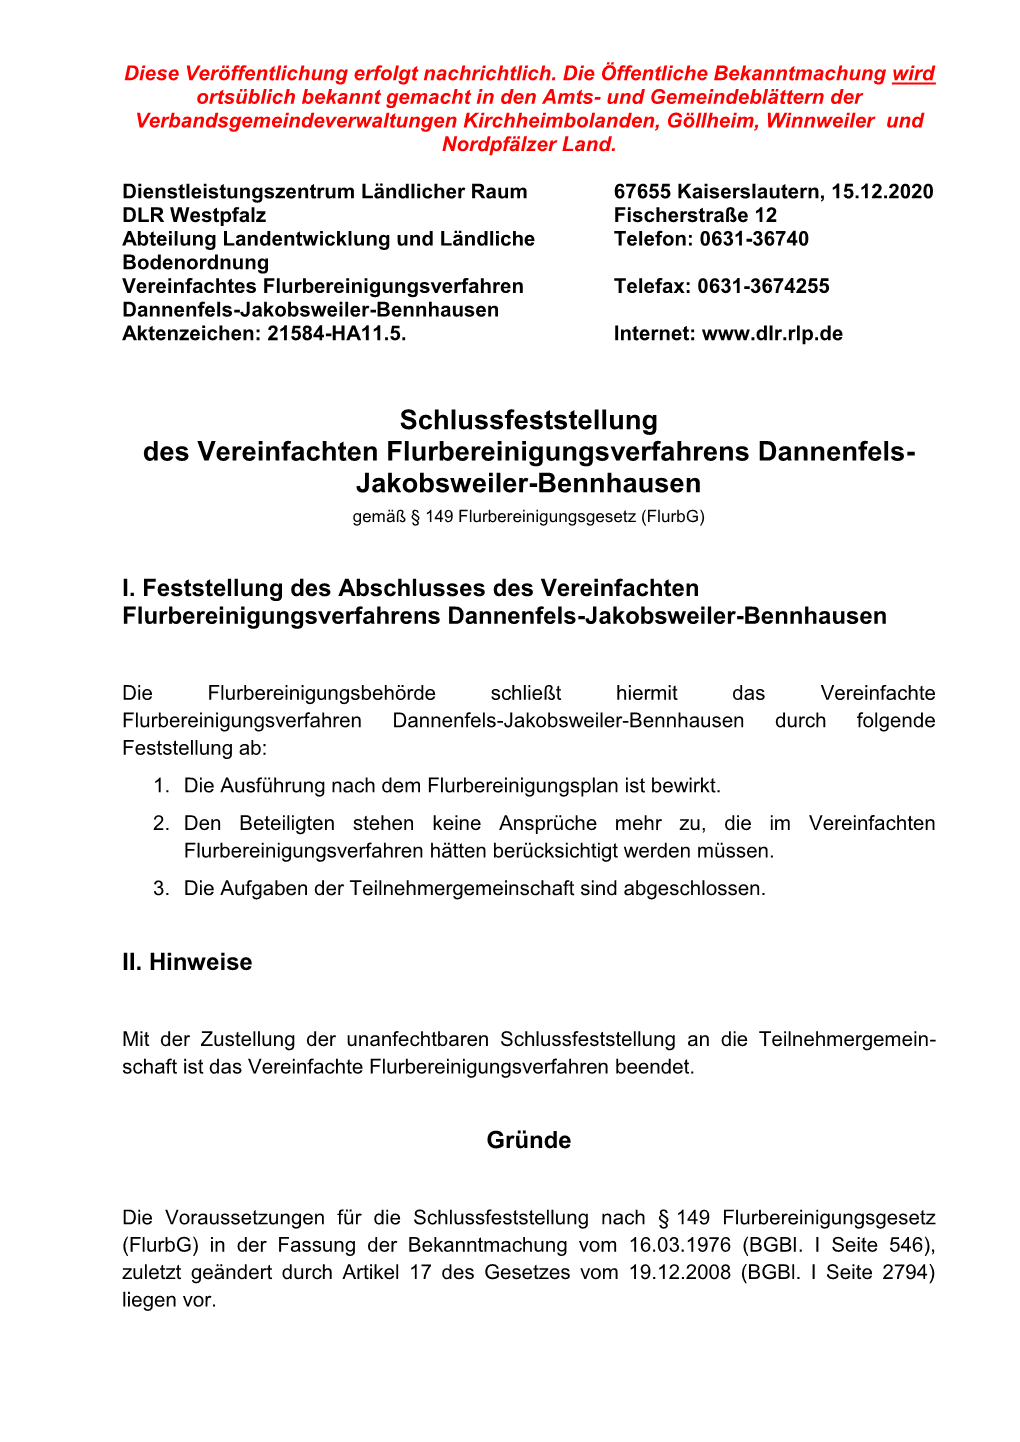 Schlussfeststellung Des Vereinfachten Flurbereinigungsverfahrens Dannenfels- Jakobsweiler-Bennhausen Gemäß § 149 Flurbereinigungsgesetz (Flurbg)